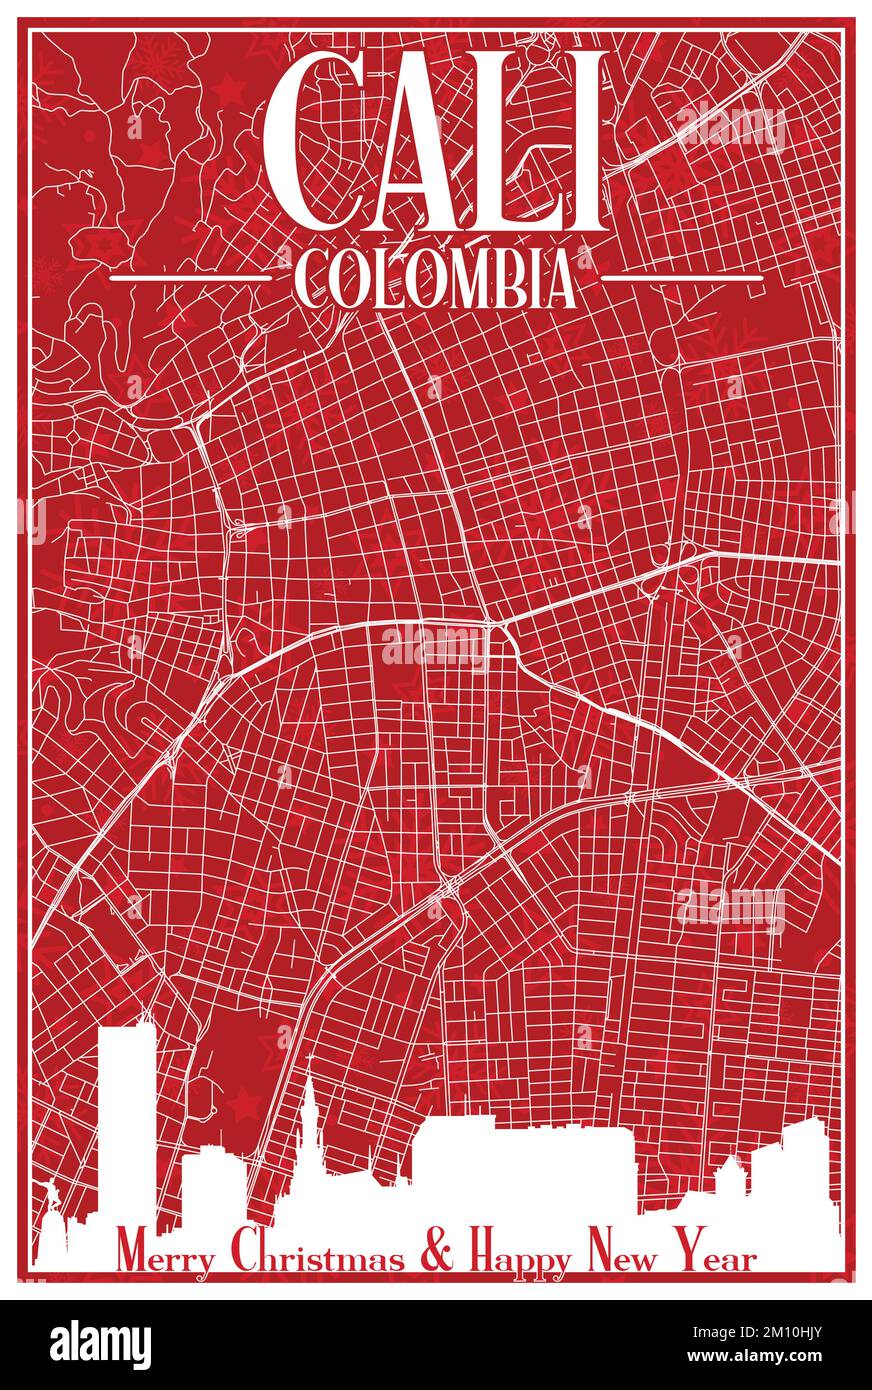 Cartolina di Natale del centro DI CALI, COLOMBIA Illustrazione Vettoriale